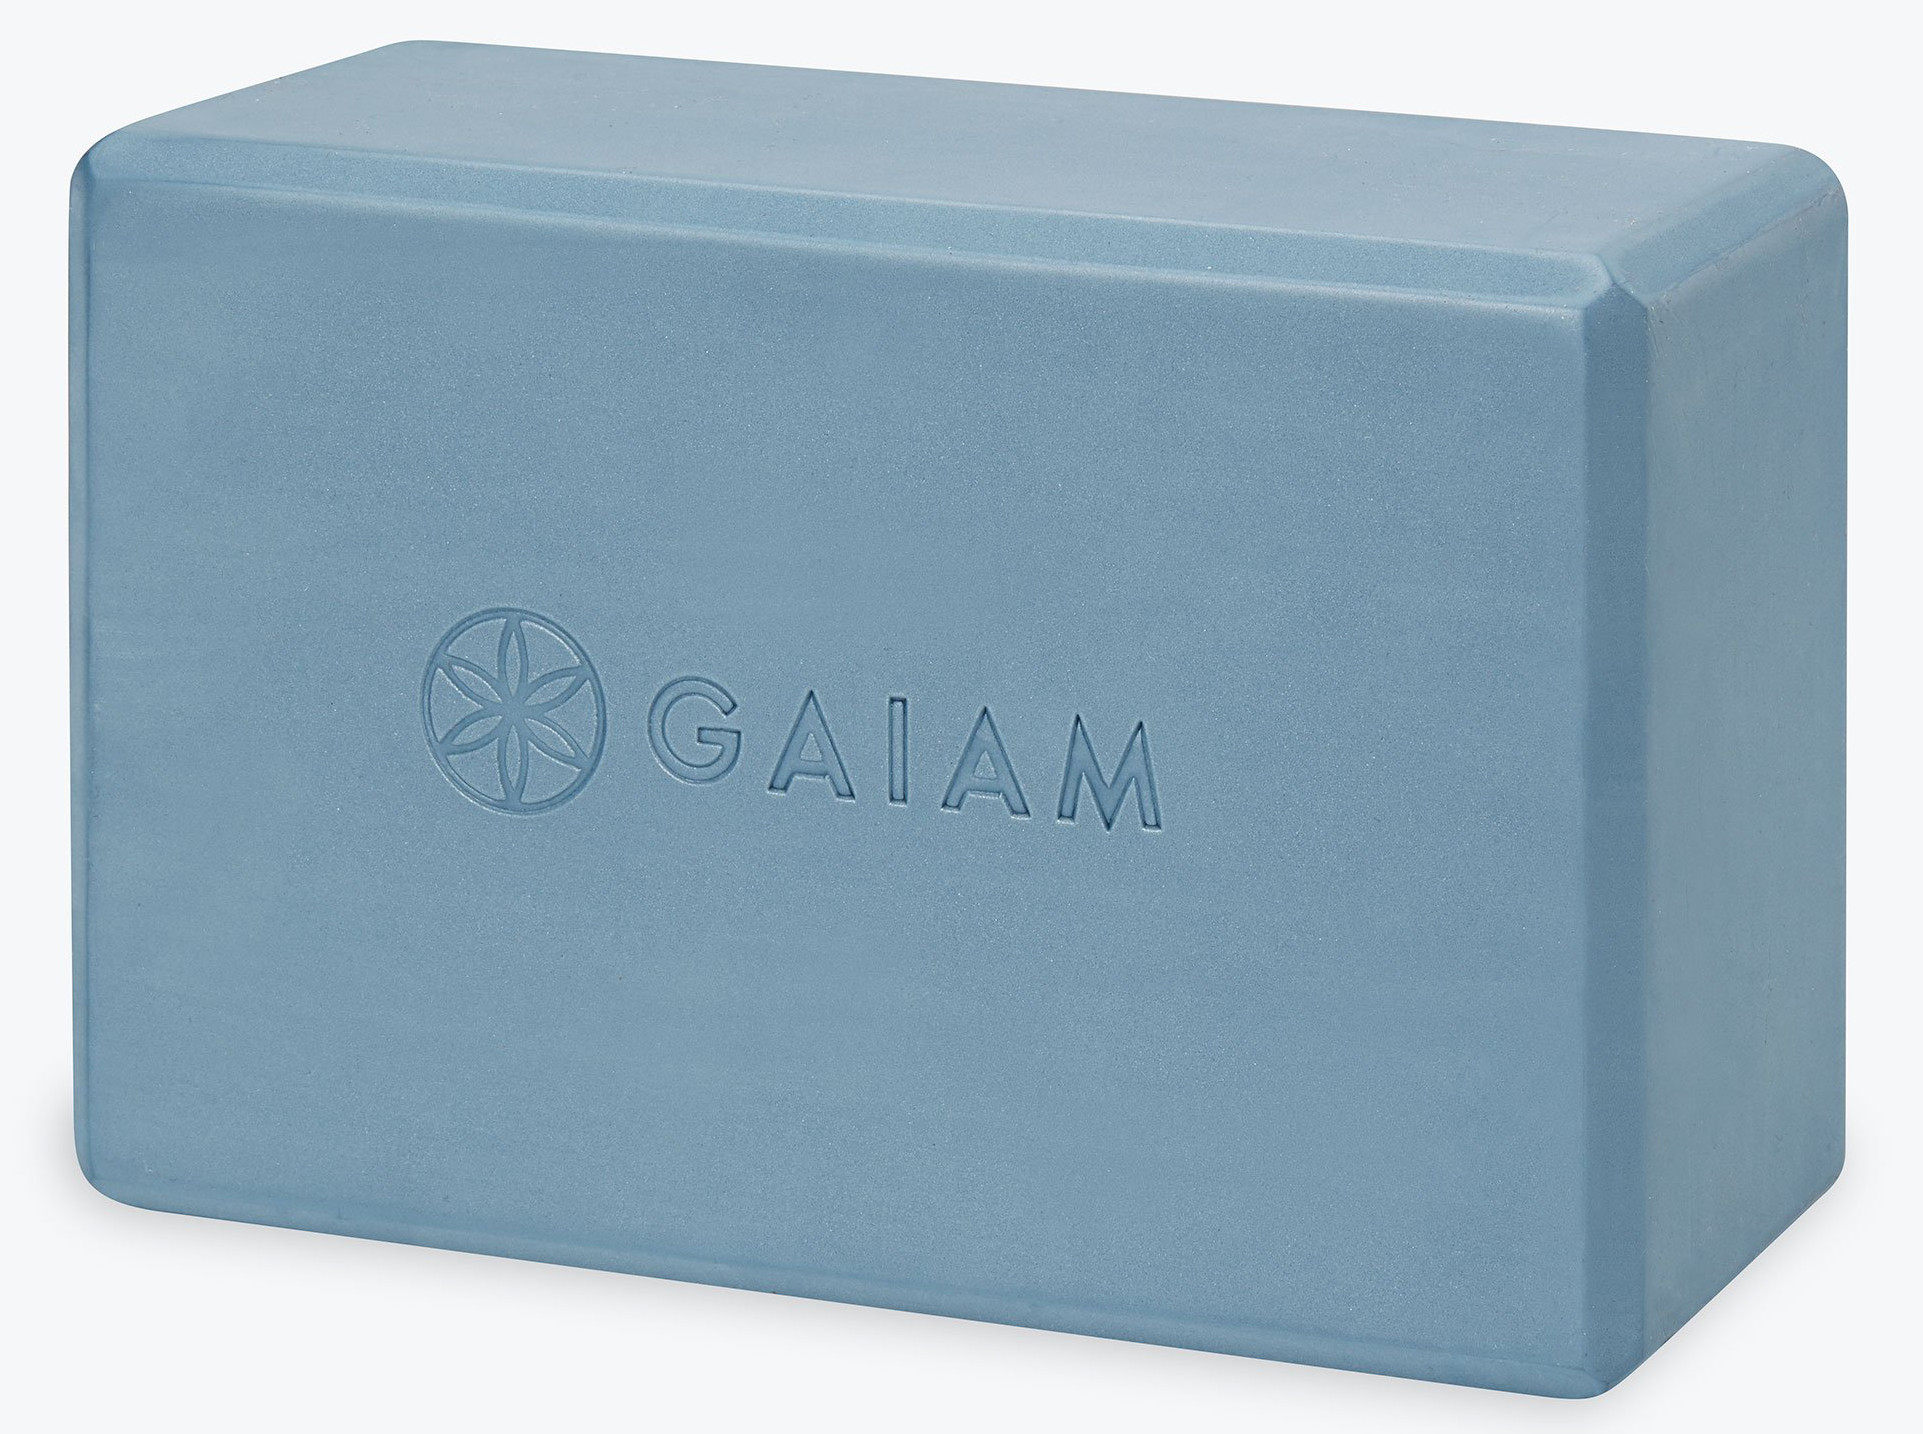 Gaiam Printed Pilates/Yoga Block